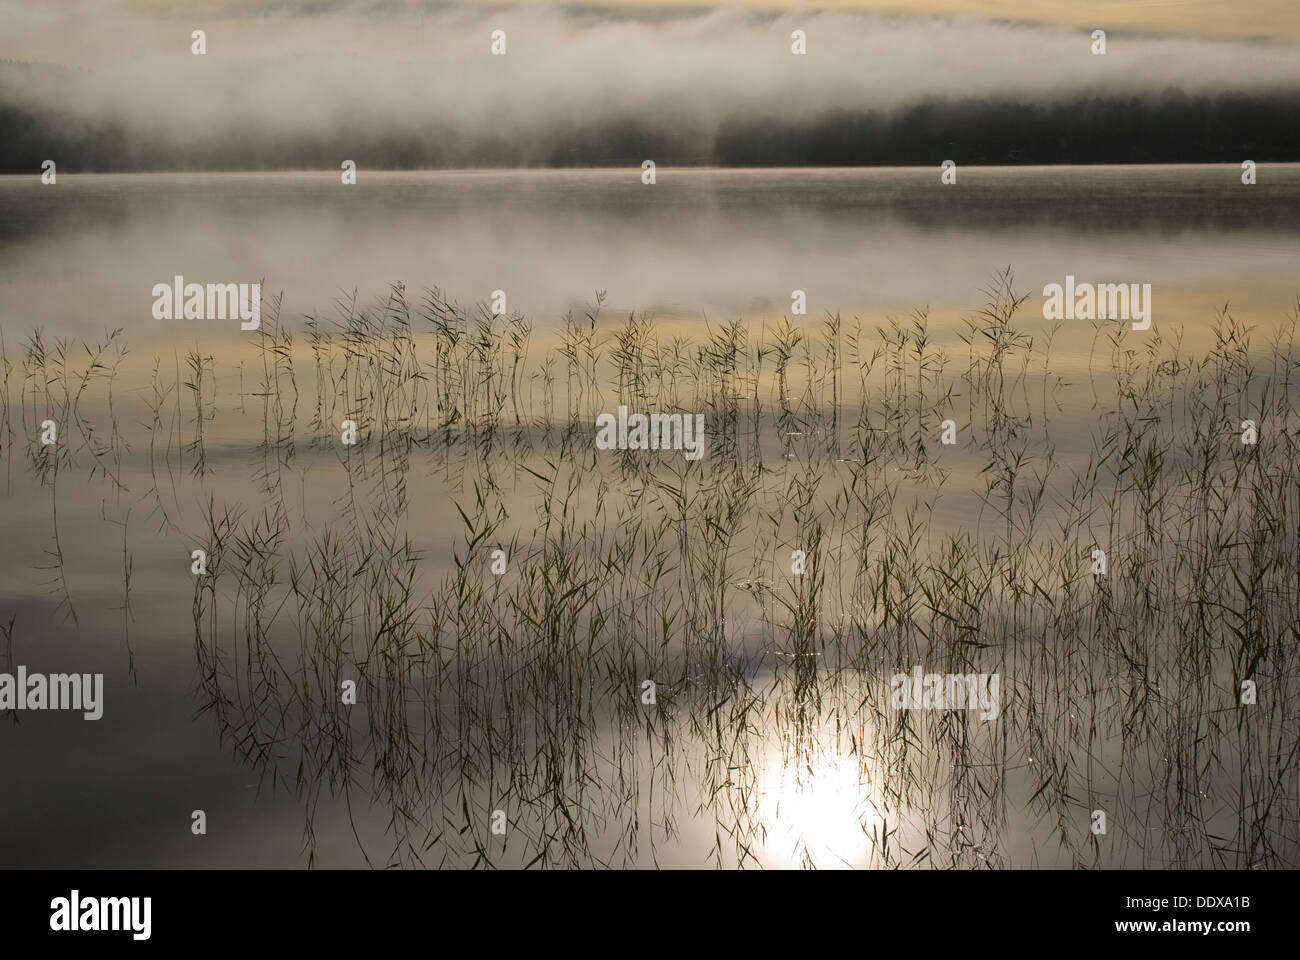 Early morning fog hovering over Lake Iväg, Sweden Stock Photo